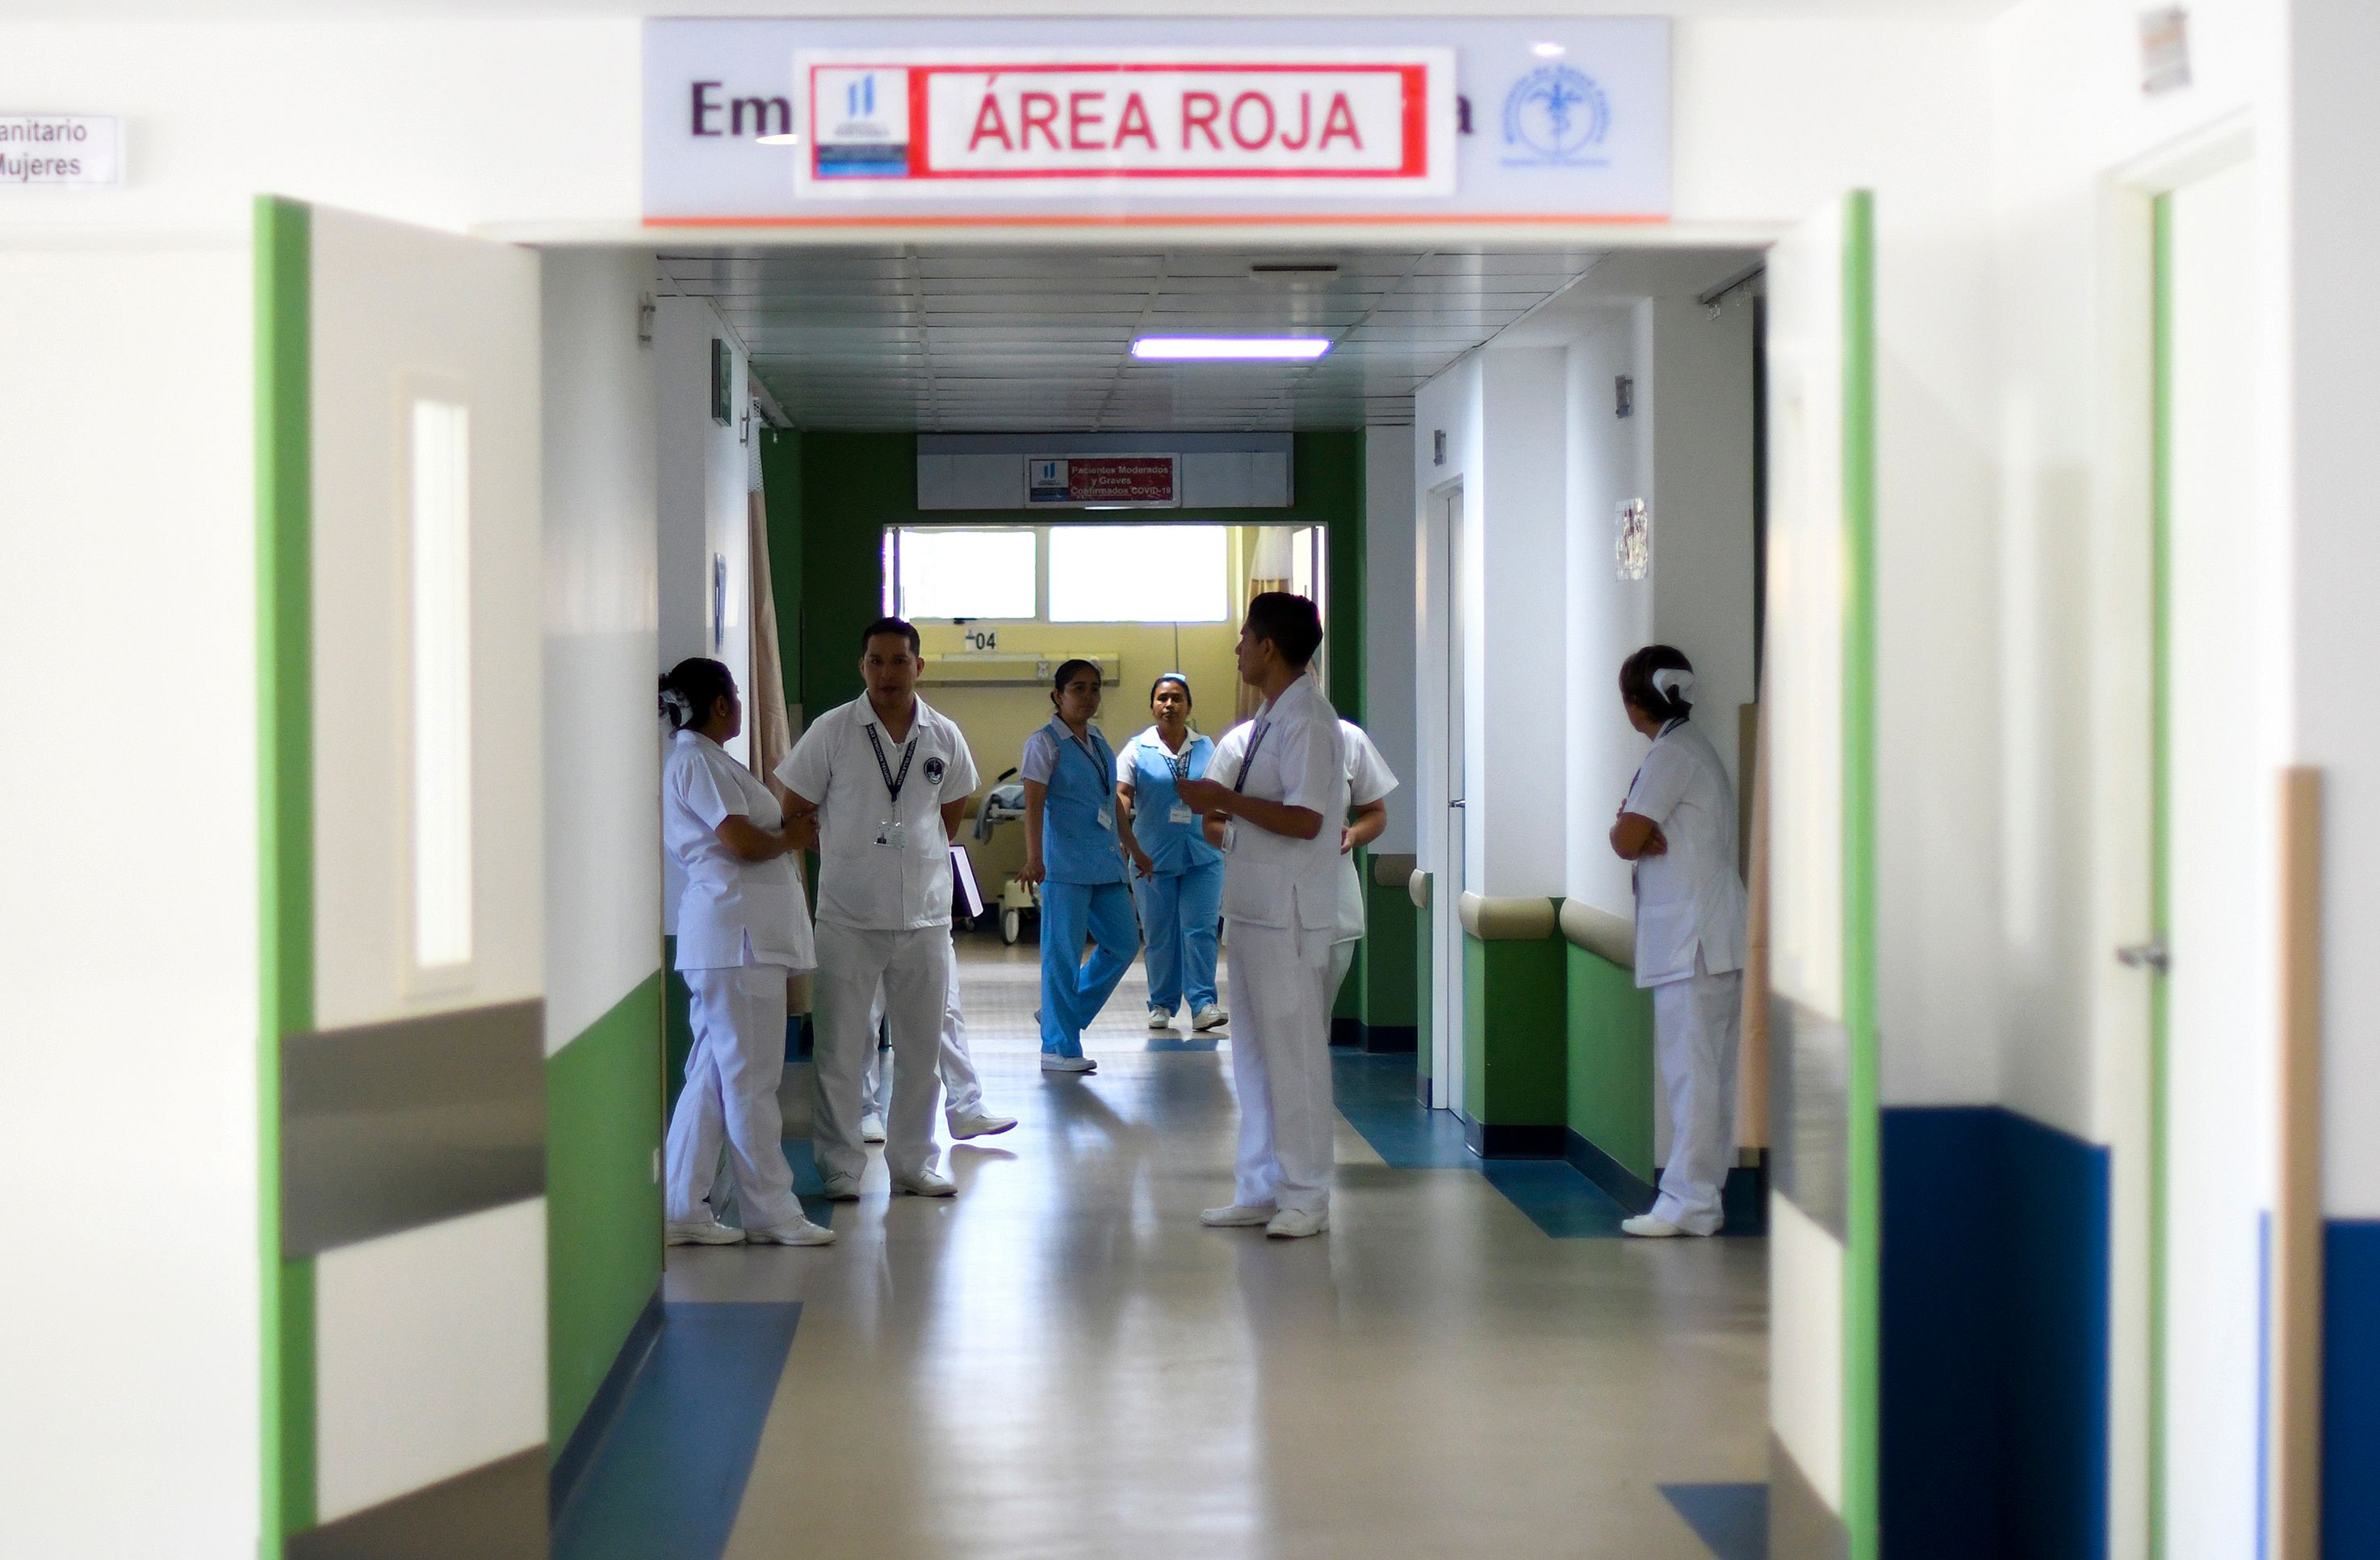 Un grupo de enfermeras permanece en el área roja designada para pacientes que puedan estar infectados con el nuevo coronavirus COVID-19 en el hospital Villa Nueva. (Foto Prensa Libre: AFP)